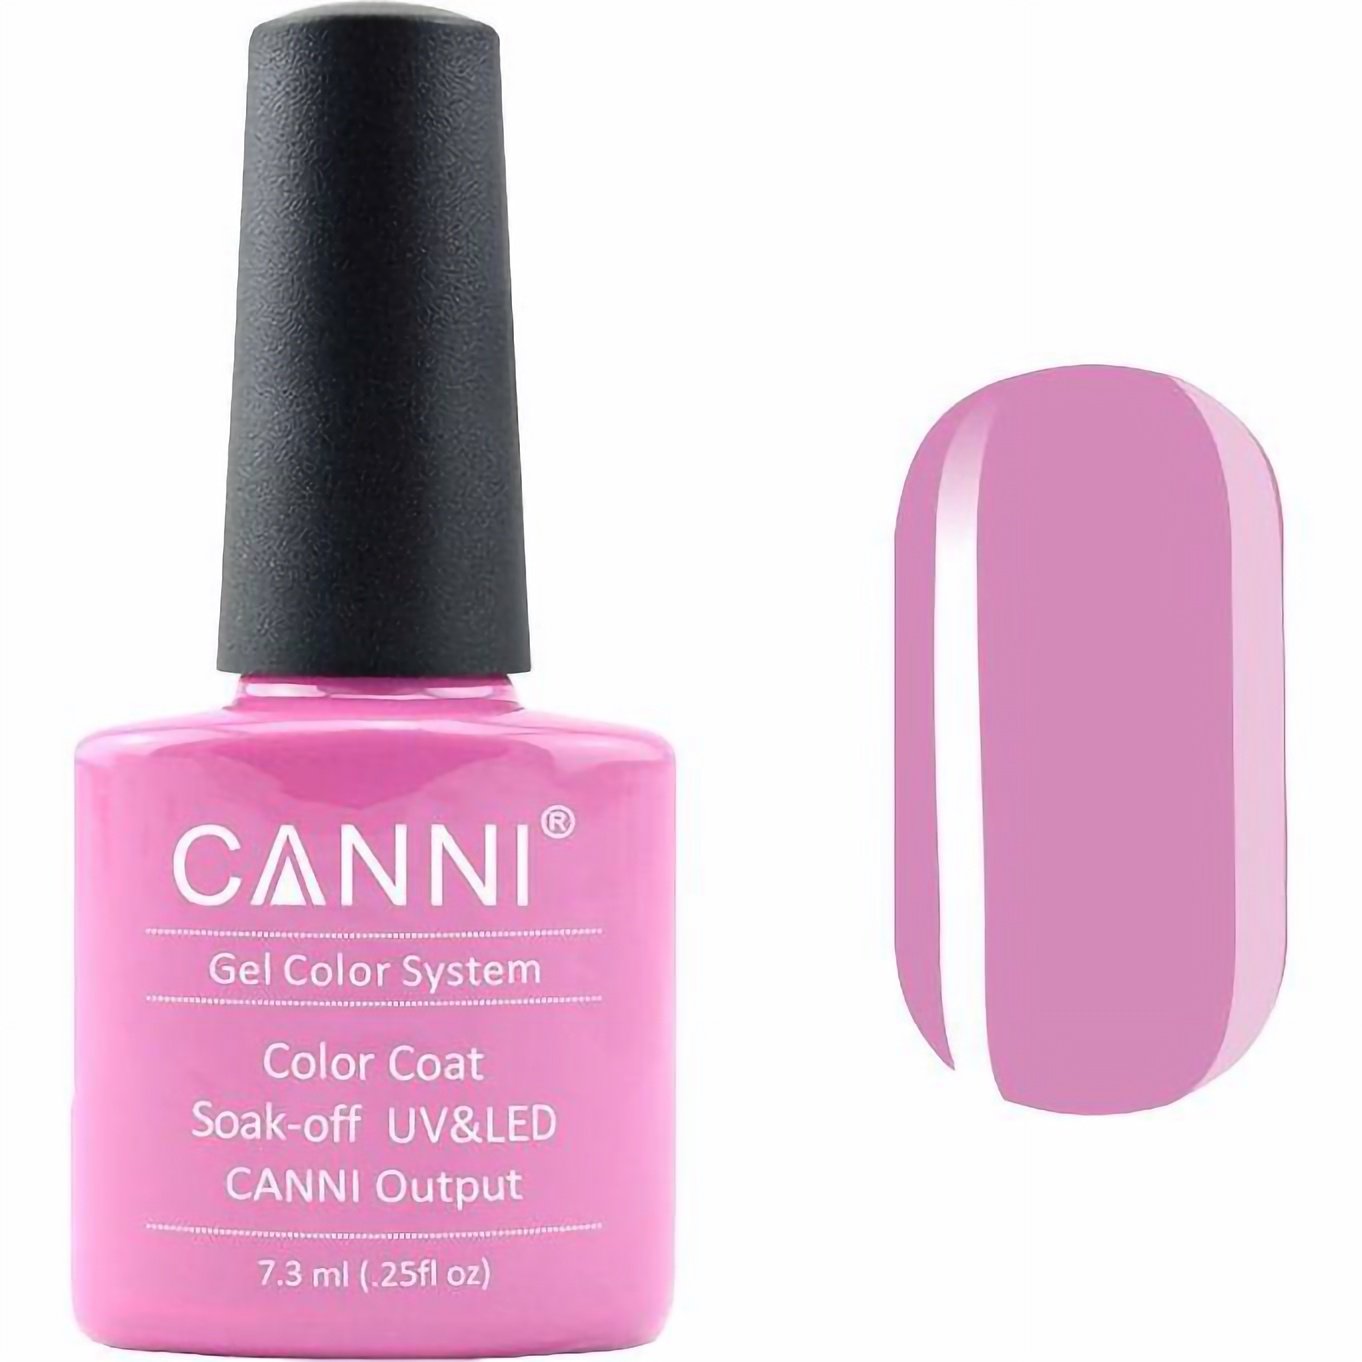 Гель-лак Canni Color Coat Soak-off UV&LED 90 ніжна фуксія 7.3 мл - фото 1